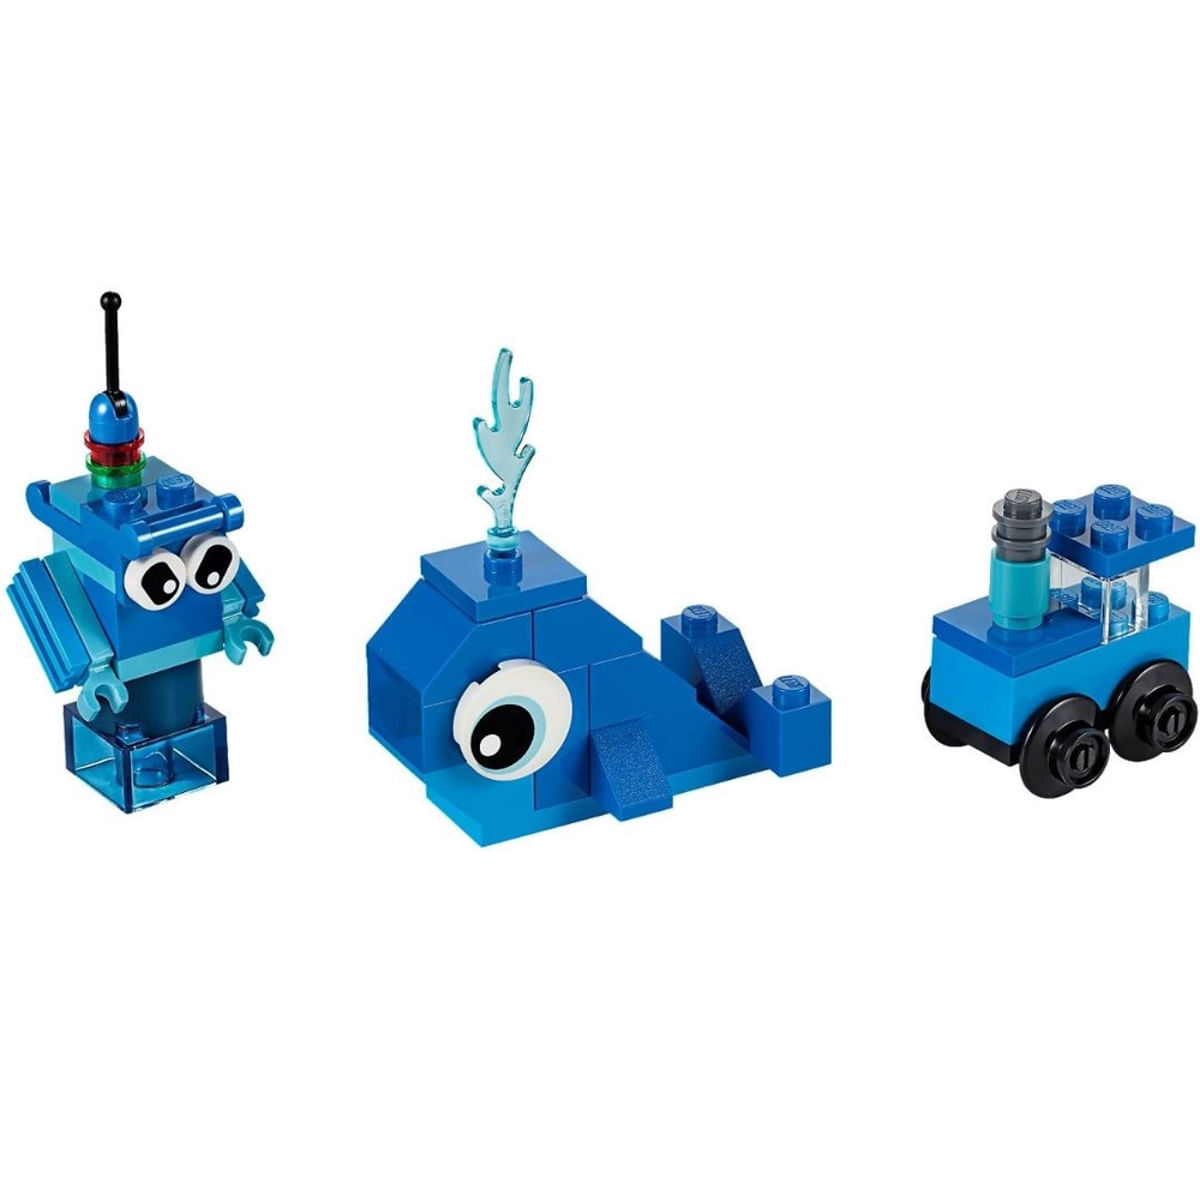 bl-pecas-criativas-lego-azul-11006-3.jpg